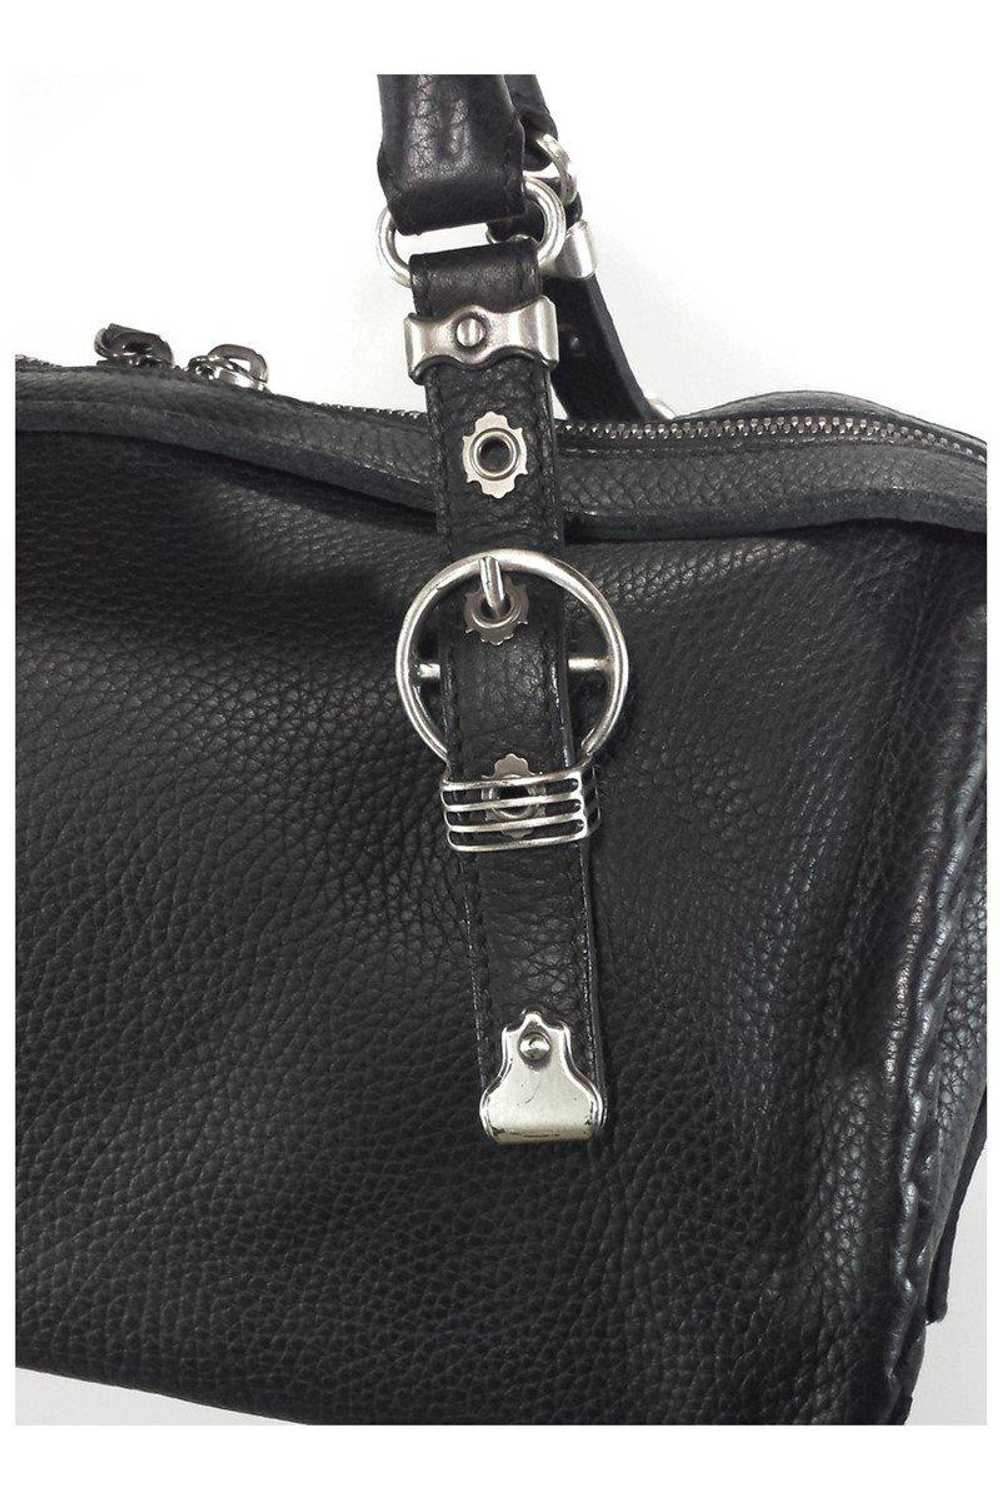 Bottega Veneta - Black Pebbled Leather Handbag - image 5